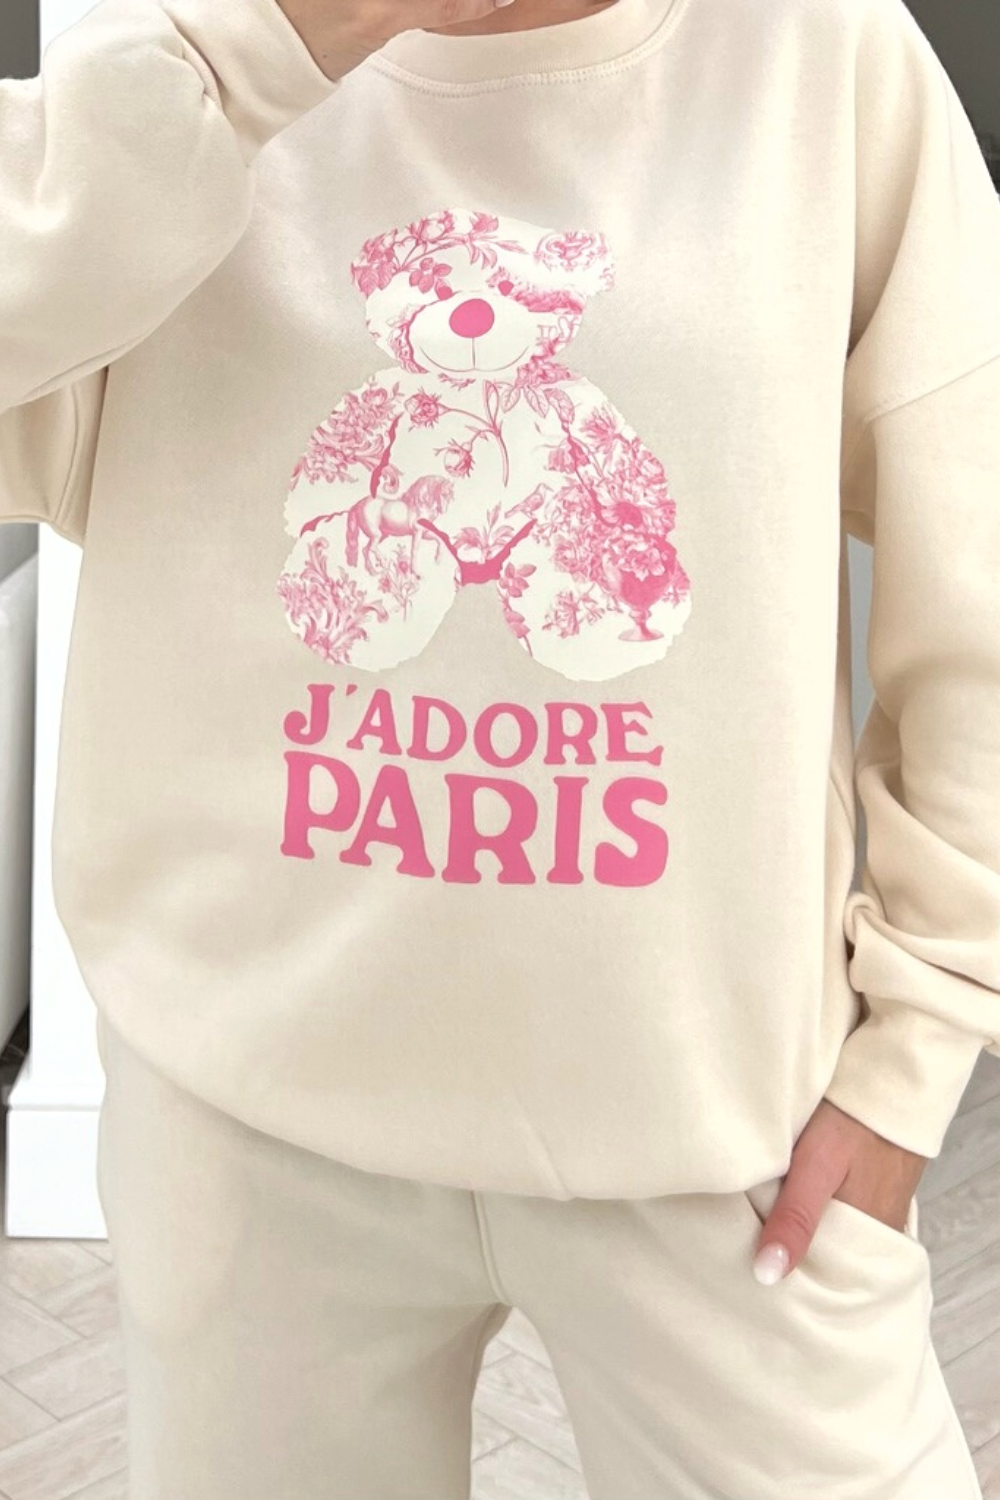 Jadore Paris pink floral teddy printed sweater loungewear set